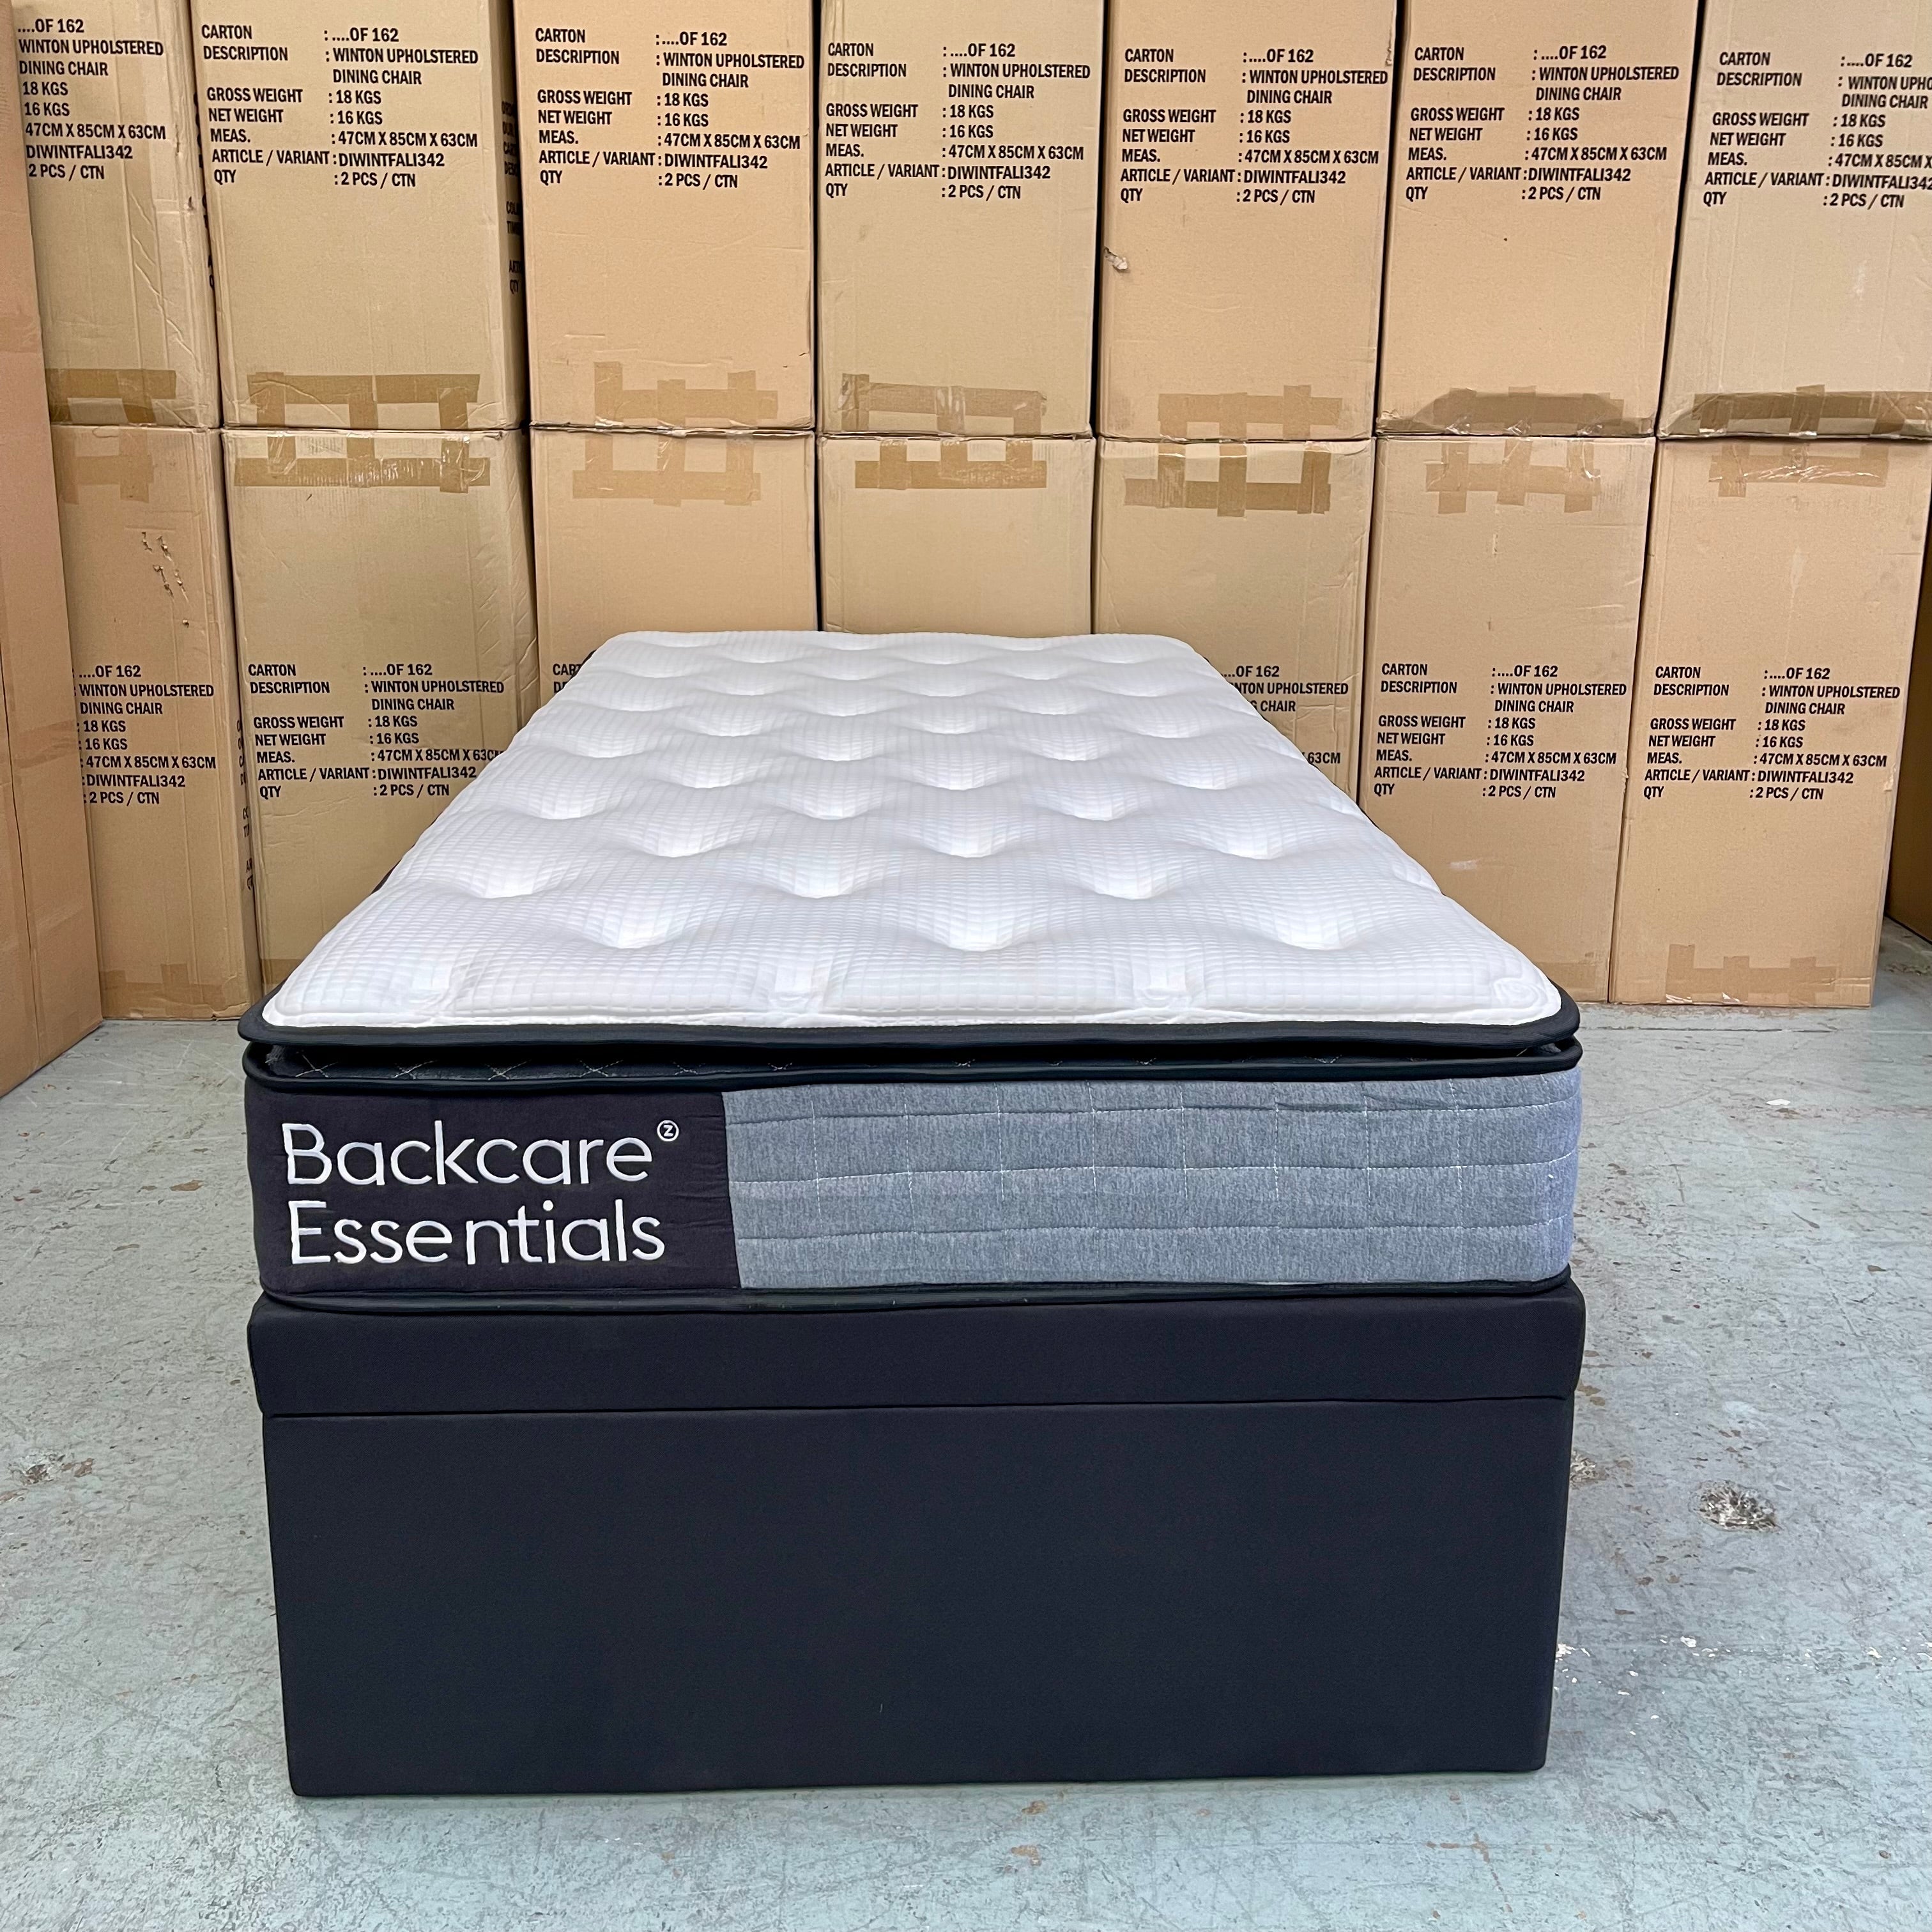 Backcare Trundler Bed set with Pocket Spring Mattresses